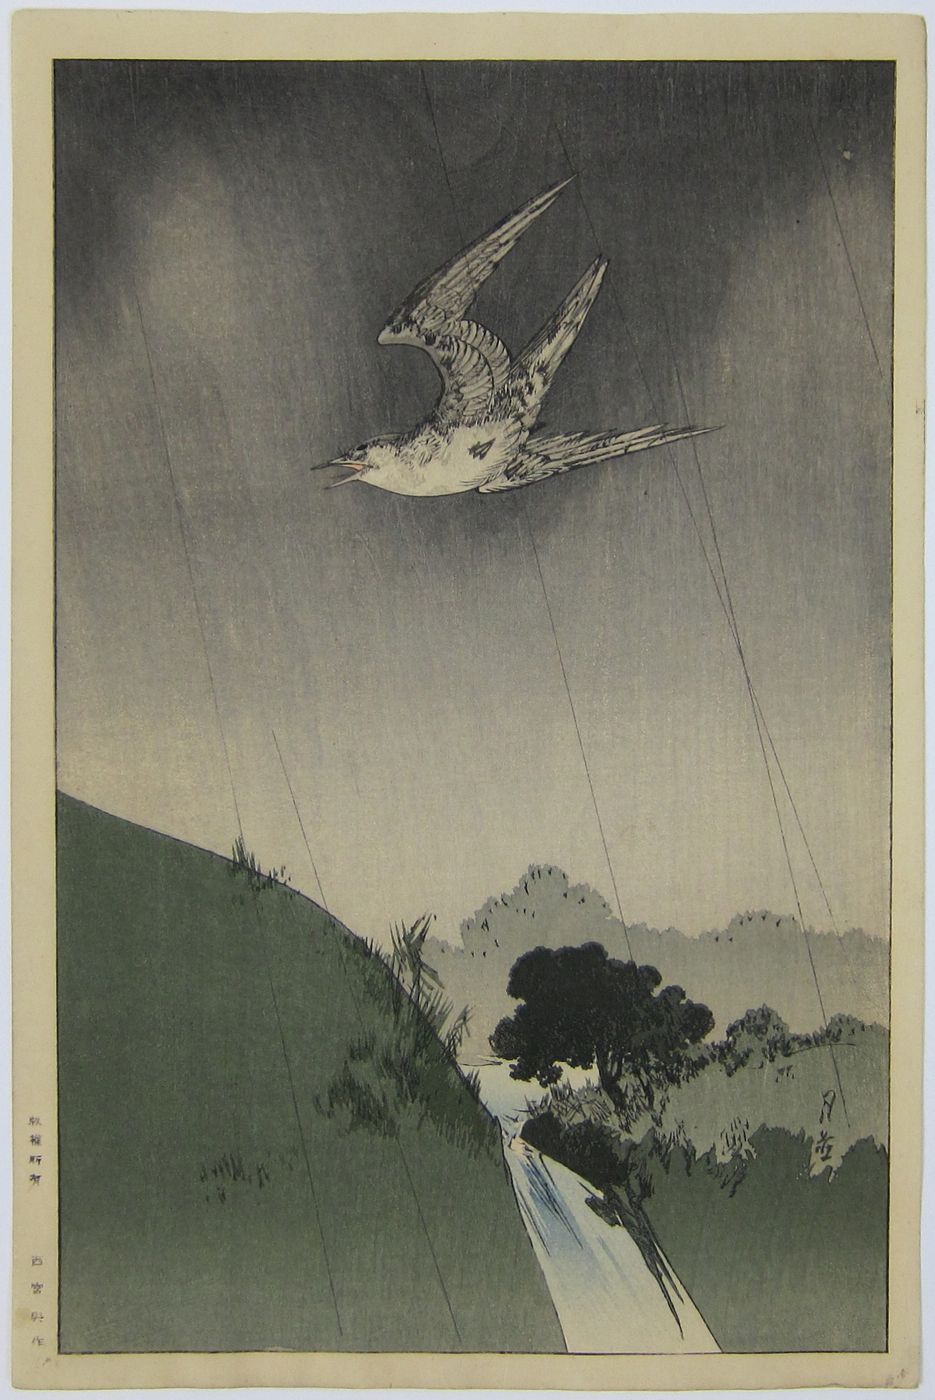 A Cuckoo in Flight. c.1930